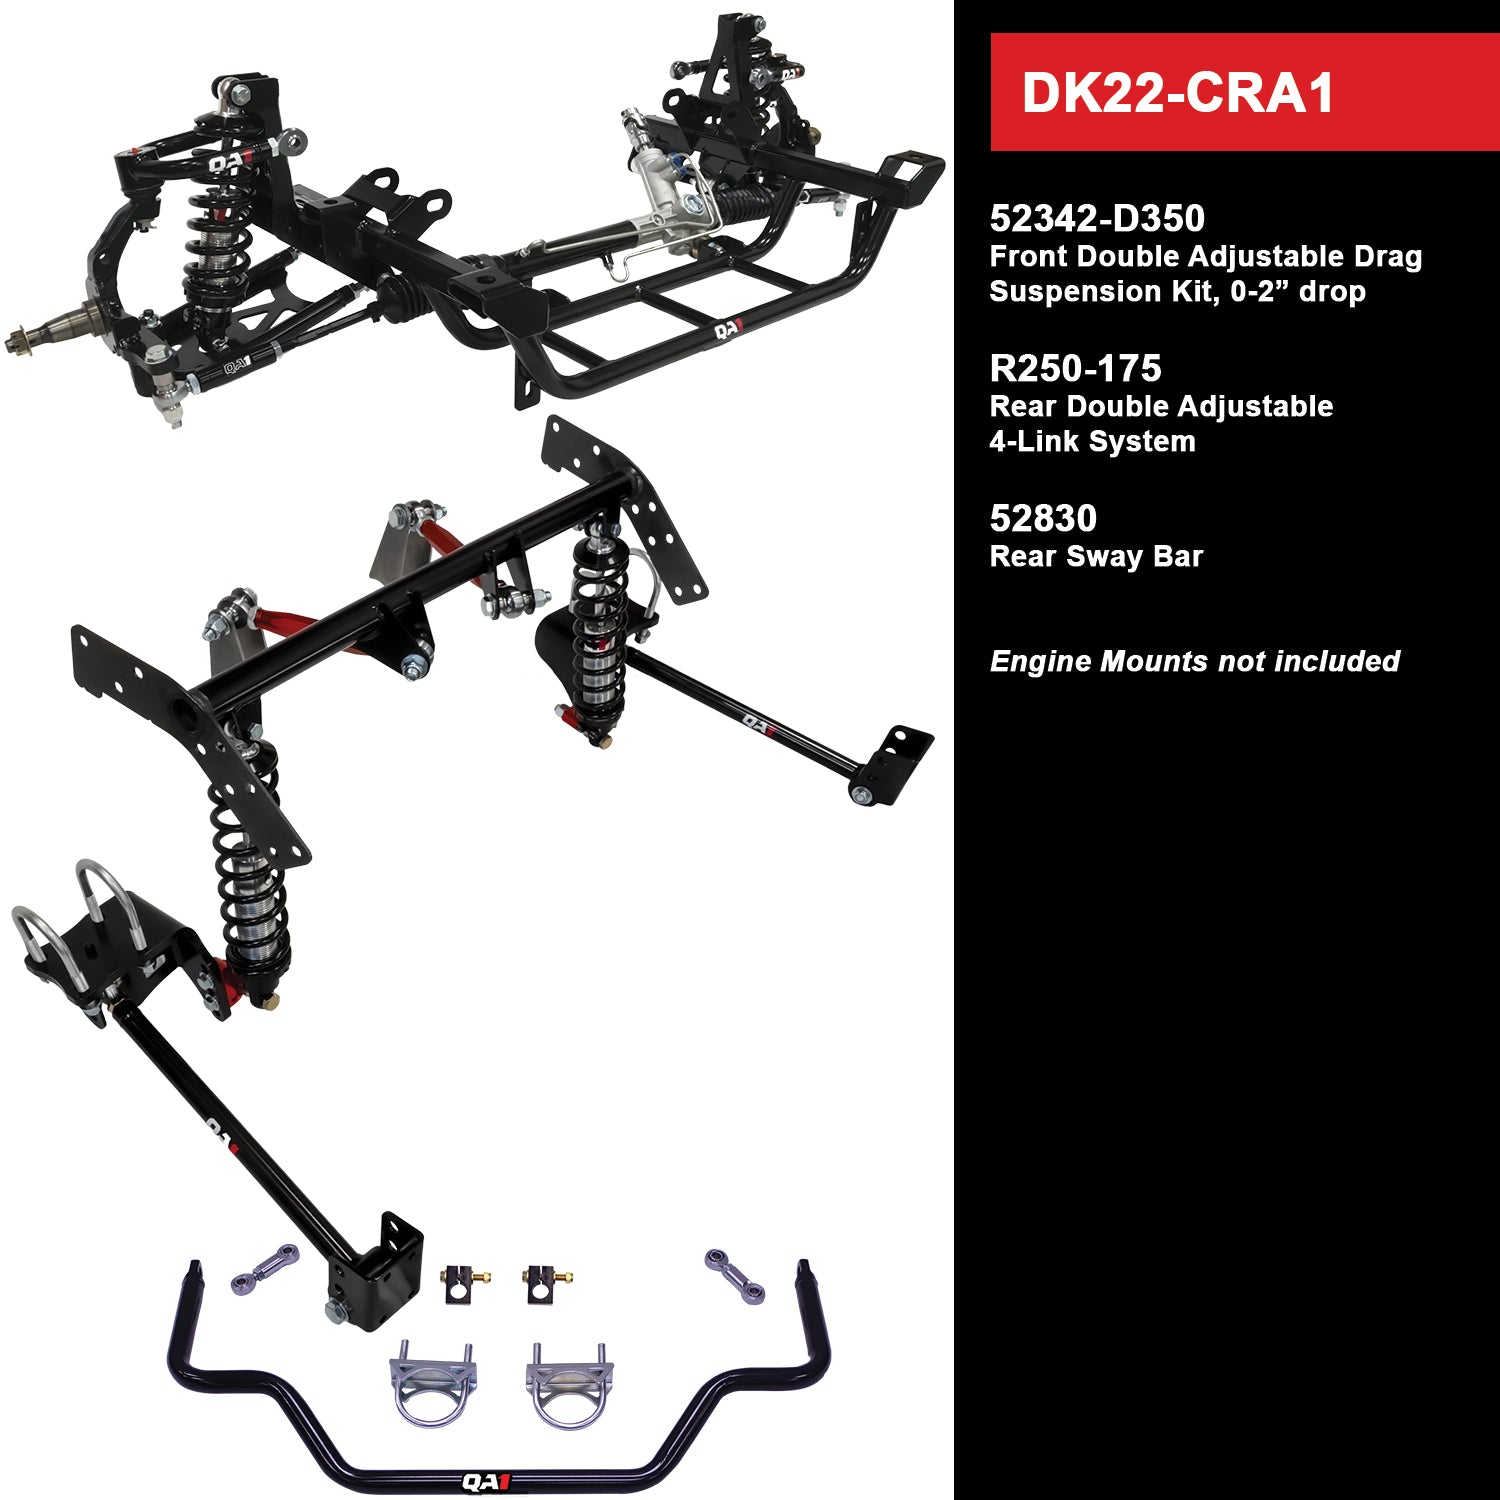 QA1 Drag Kit DK22-CRA1